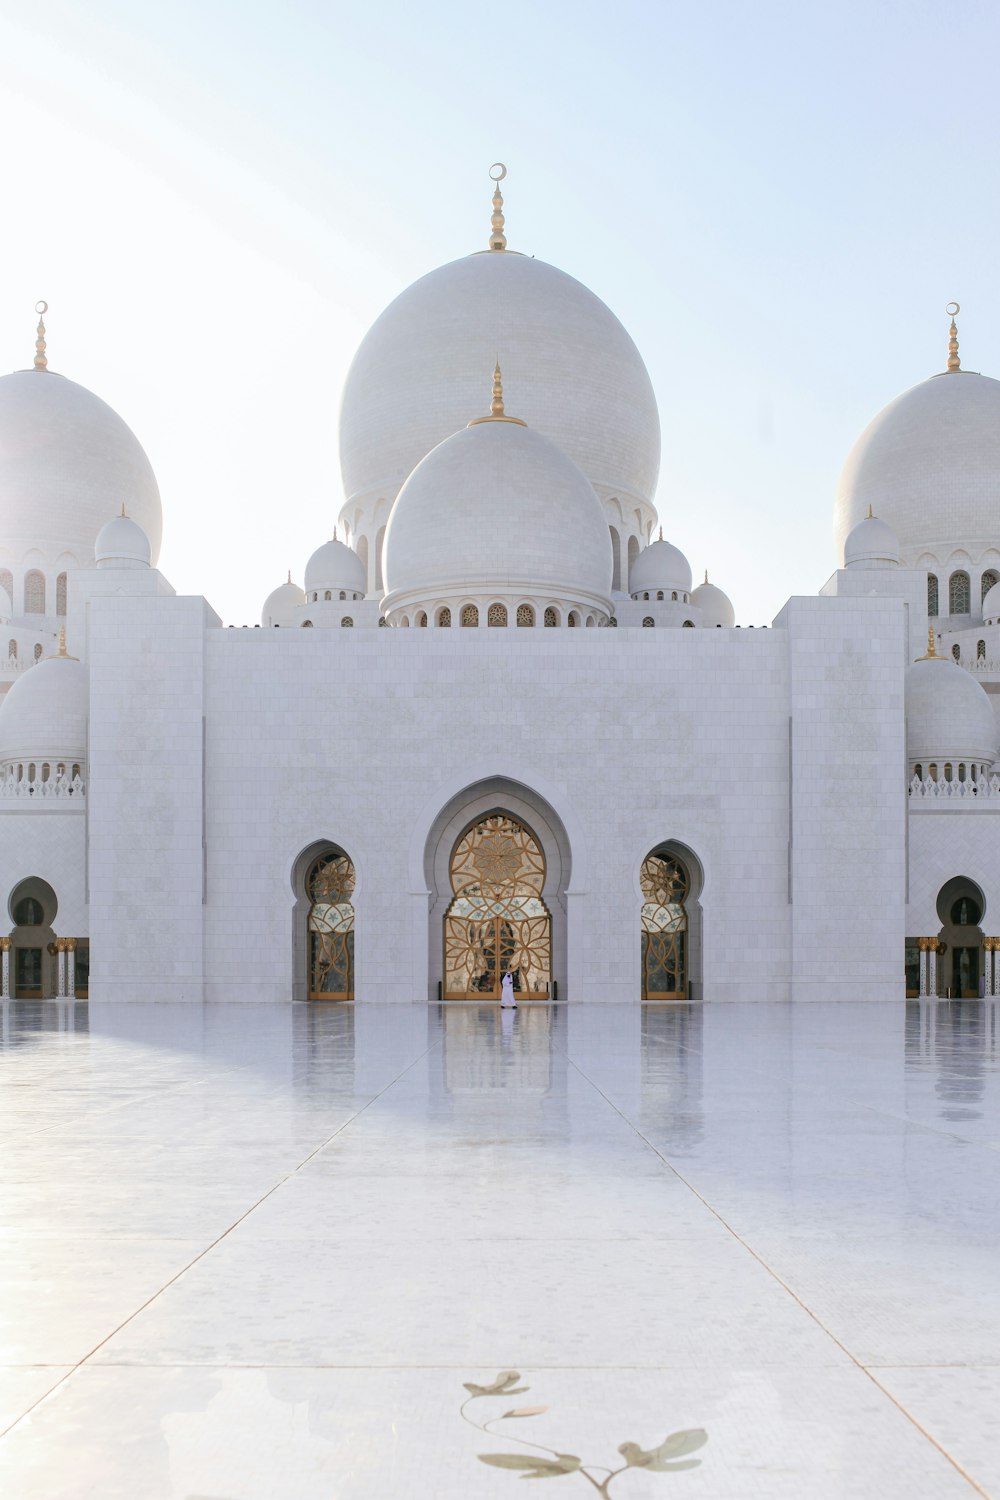 Ảnh đền thờ Hồi giáo là một cái nhìn rất đặc biệt về kiến trúc và tôn giáo. Tận hưởng sự linh thiêng và dịu dàng của một tòa đền được trang trí đầy tinh tế và nghiêm trang.